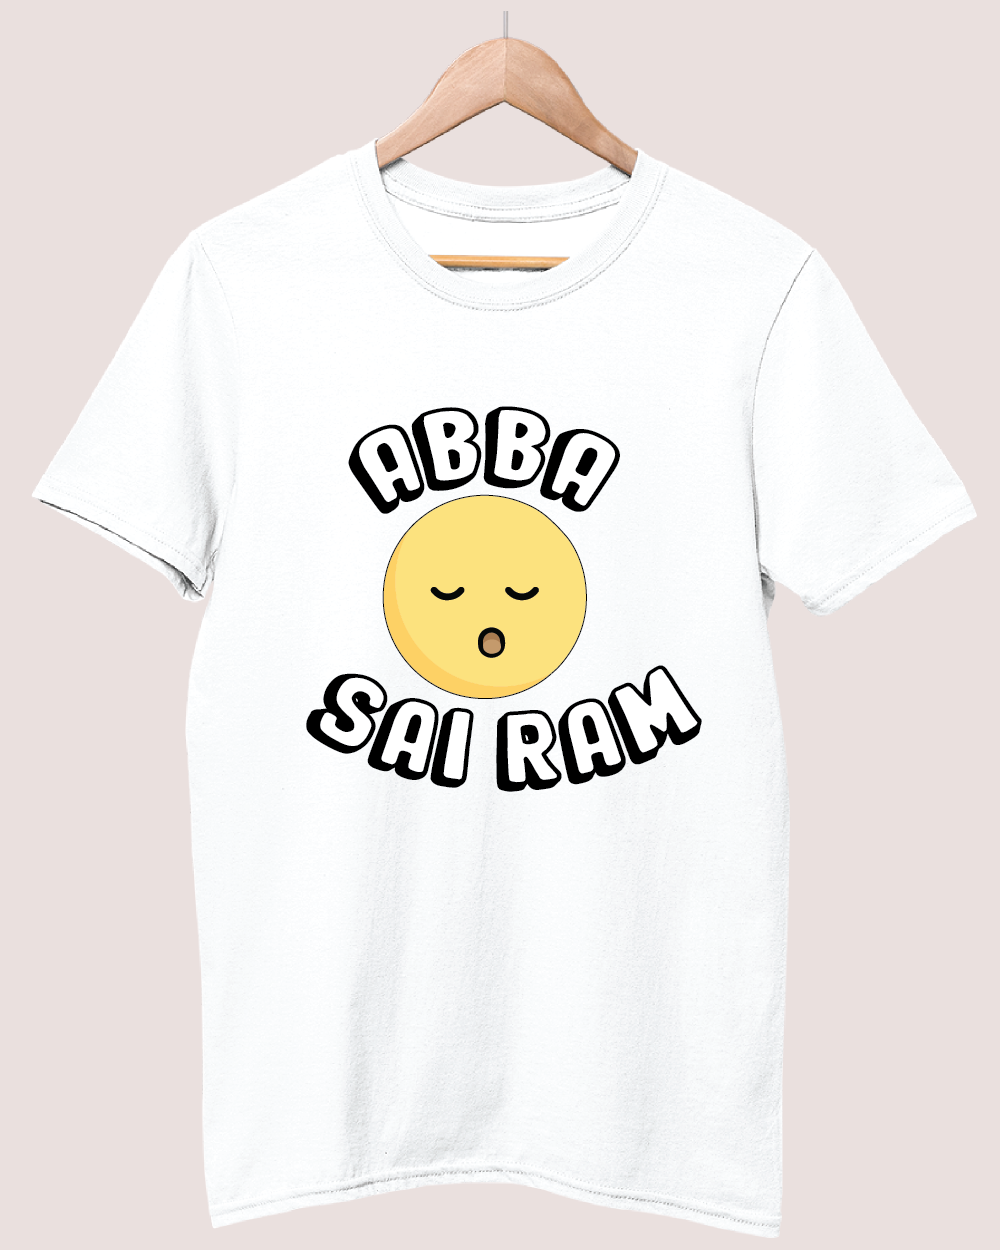 Abba Sairam 2 T-shirt